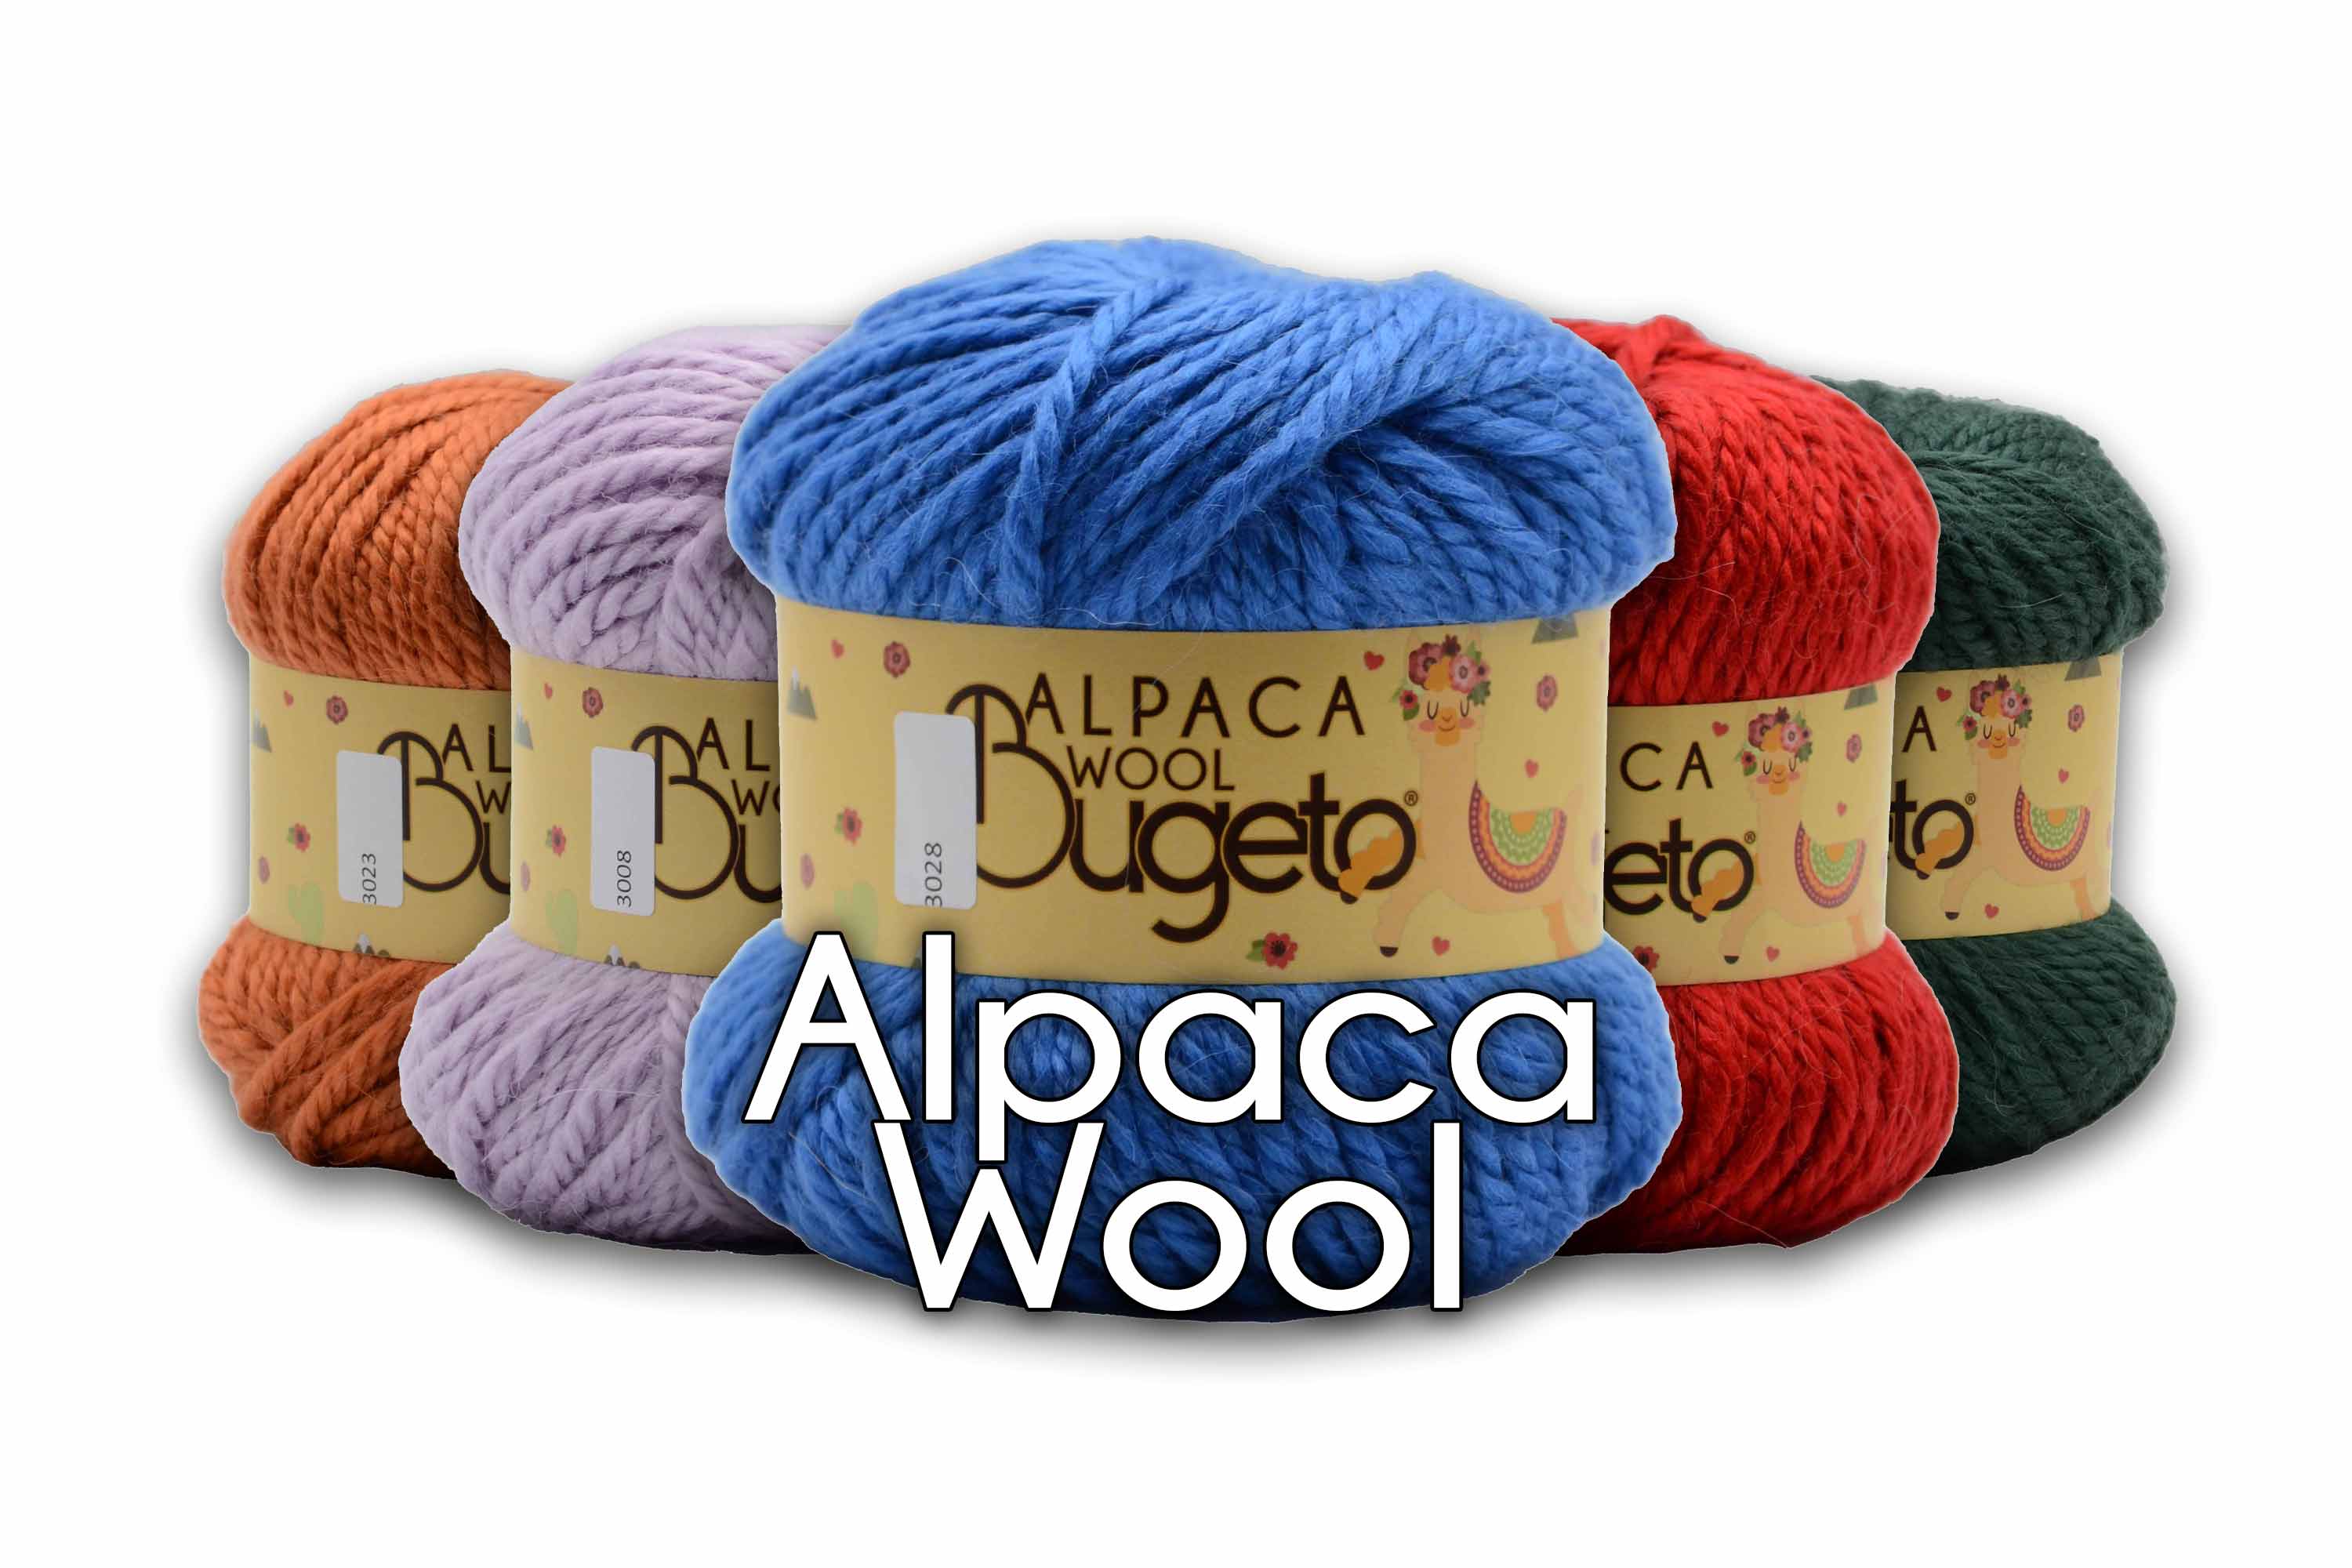 fancy yarn premium wool yarn Bugeto yarn winter yarn soft thick yarn wool yarn bugeto